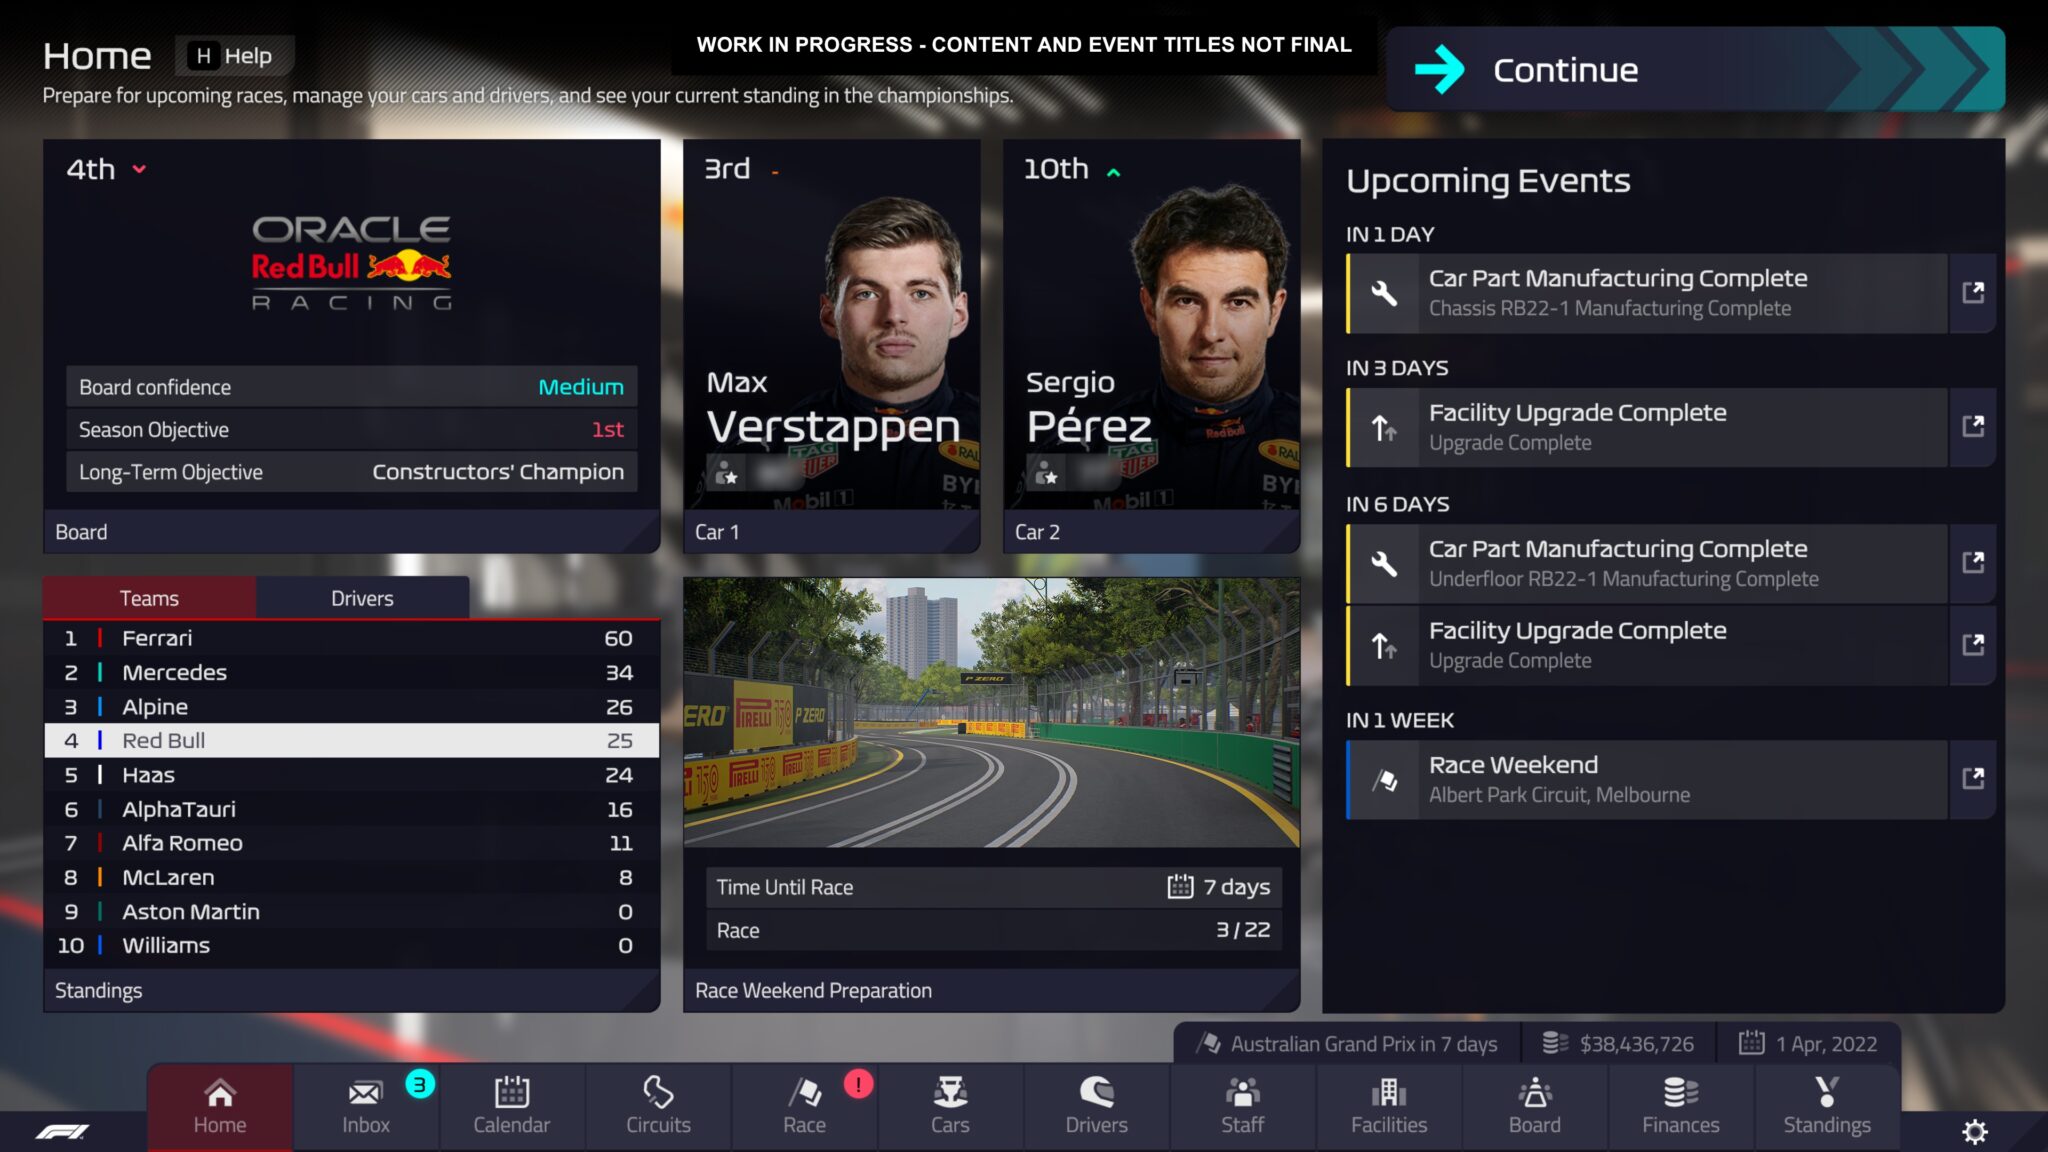 F1 Manager 2022 предлагает хорошо структурированный интерфейс с аутентичным видом Формулы 1.